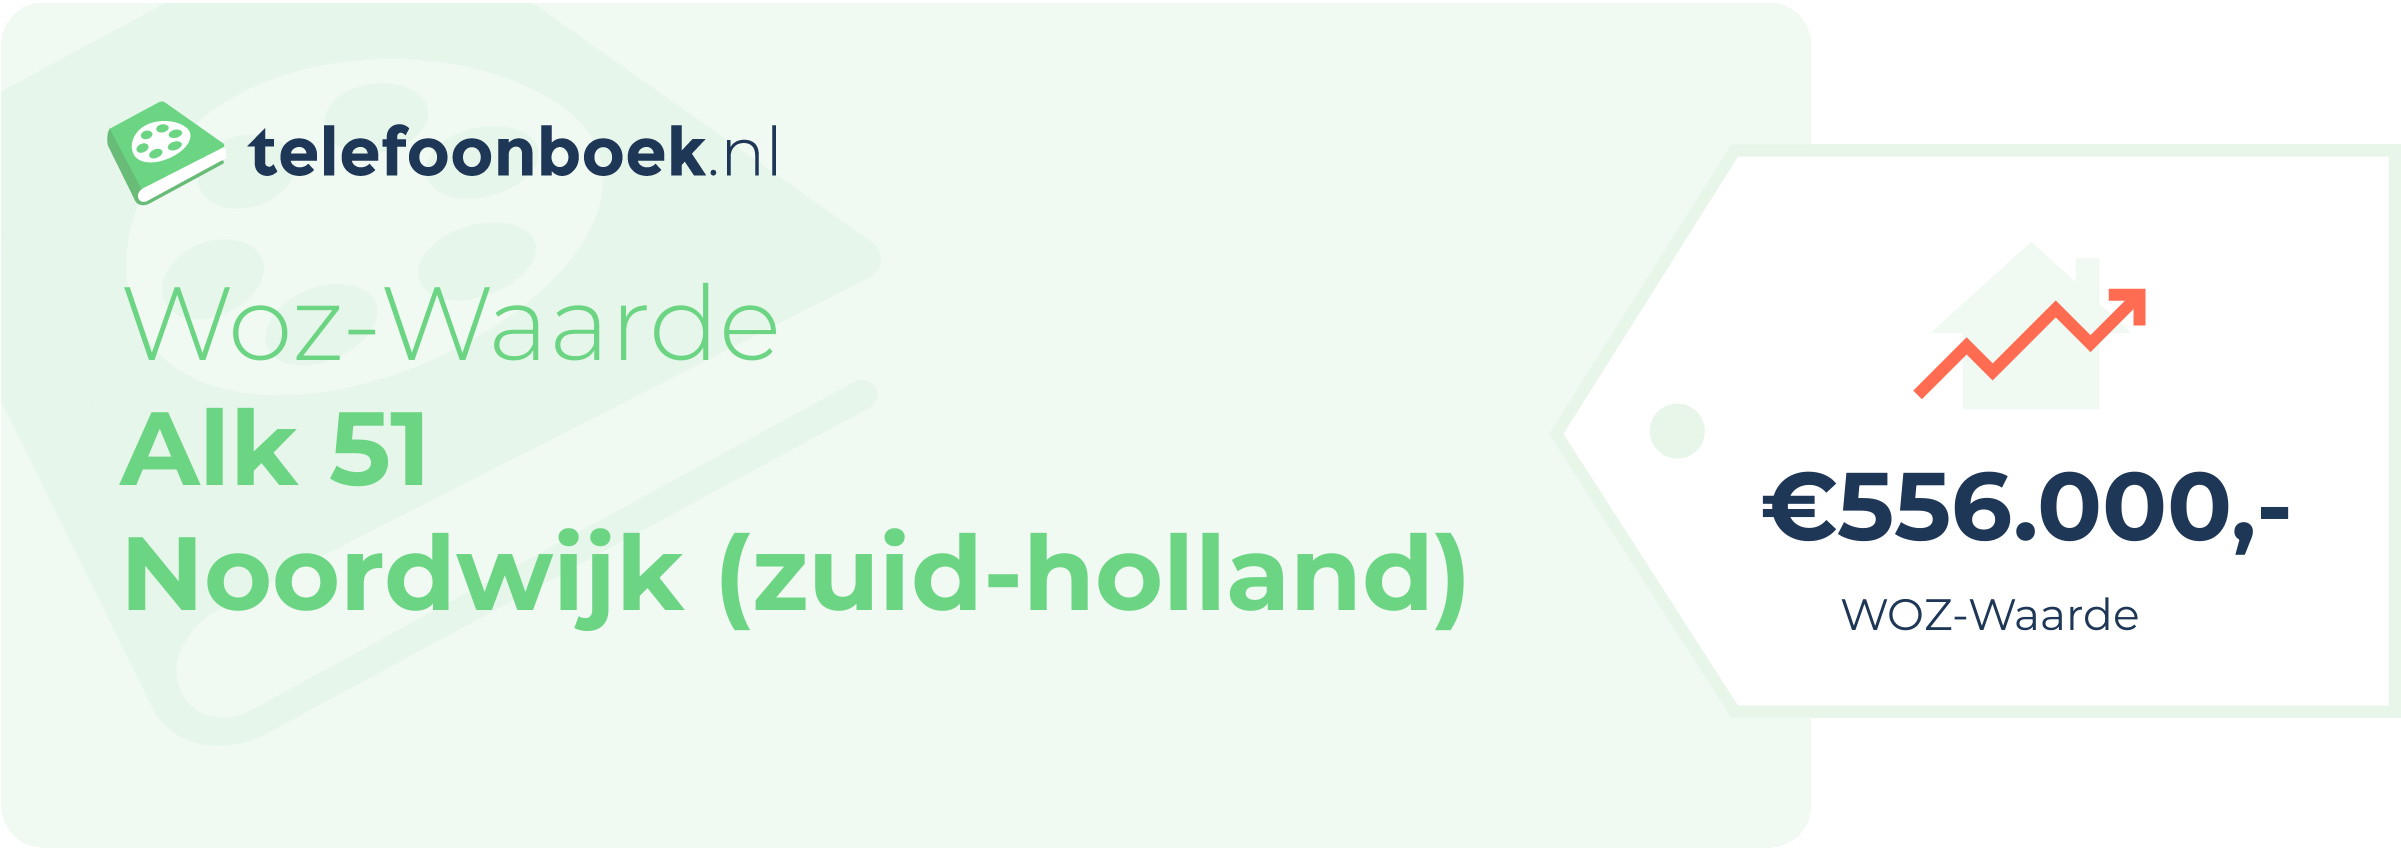 WOZ-waarde Alk 51 Noordwijk (Zuid-Holland)